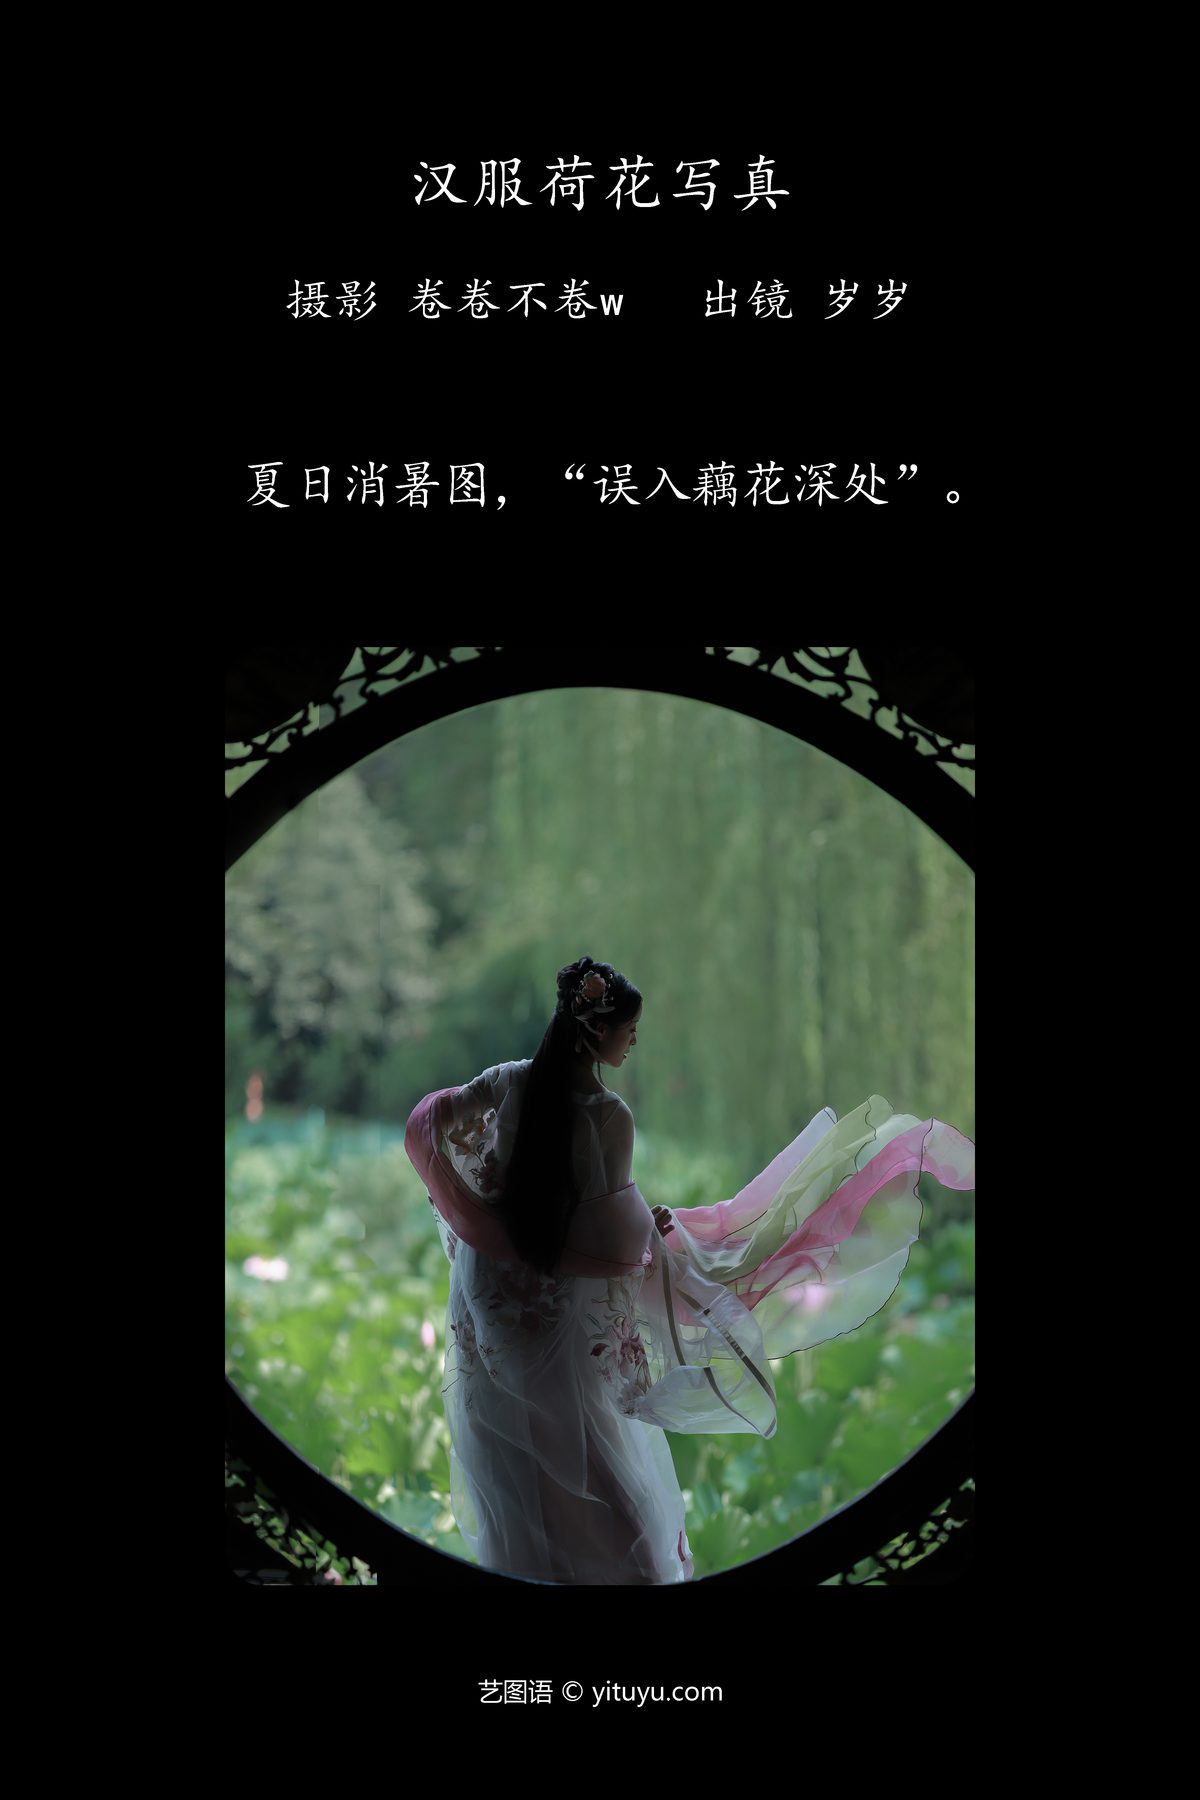 YiTuYu艺图语 Vol 5240 Nu Li Hua Zhuang De Sui Sui 0002 0907826080.jpg